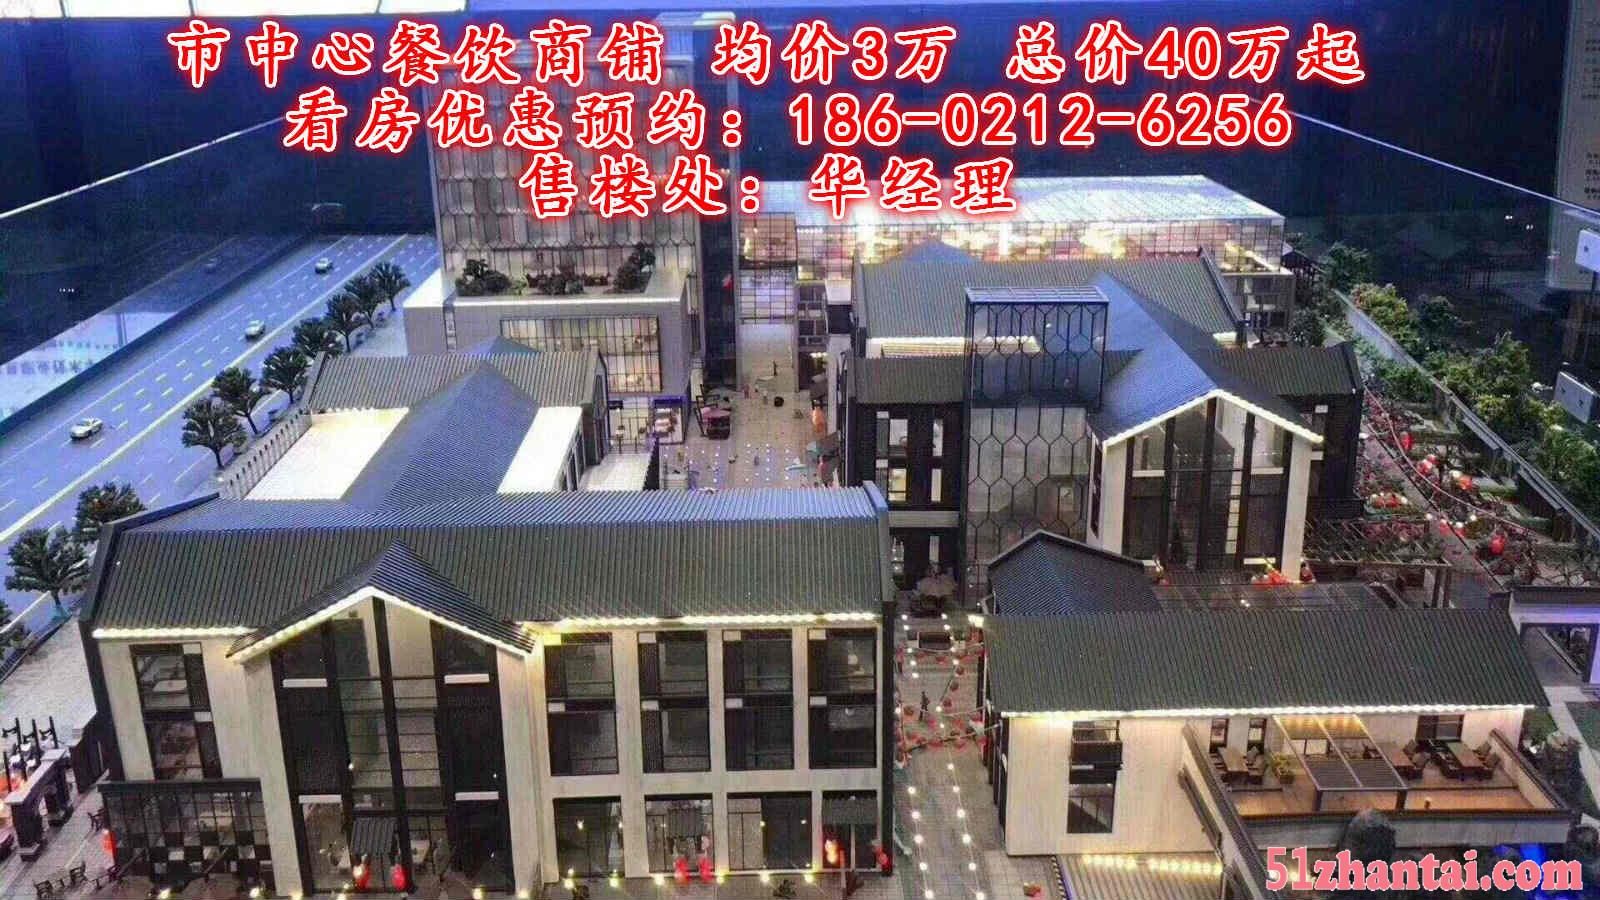 【苏州吴江香槟街商业广场】商铺火爆发售中 来电立享95折优惠-图2